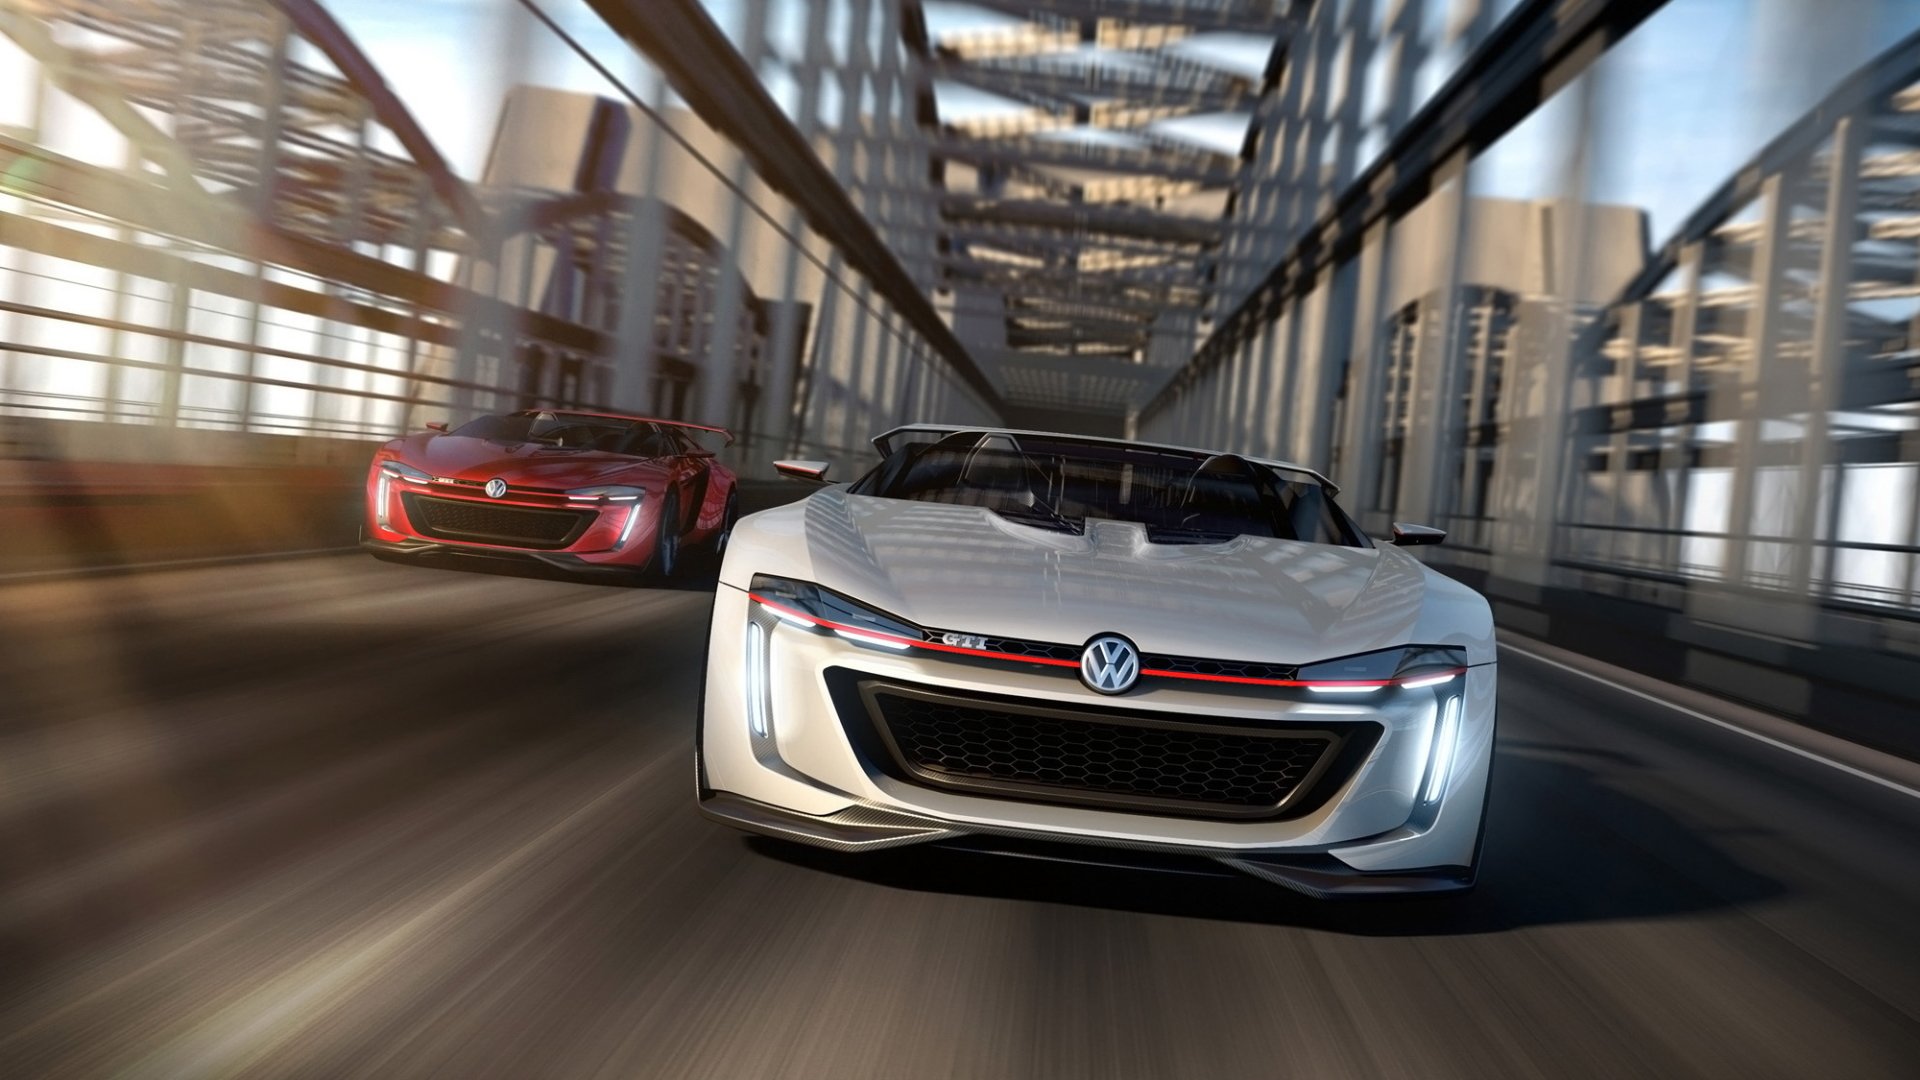 Volkswagen Gti Roadster Wallpapers